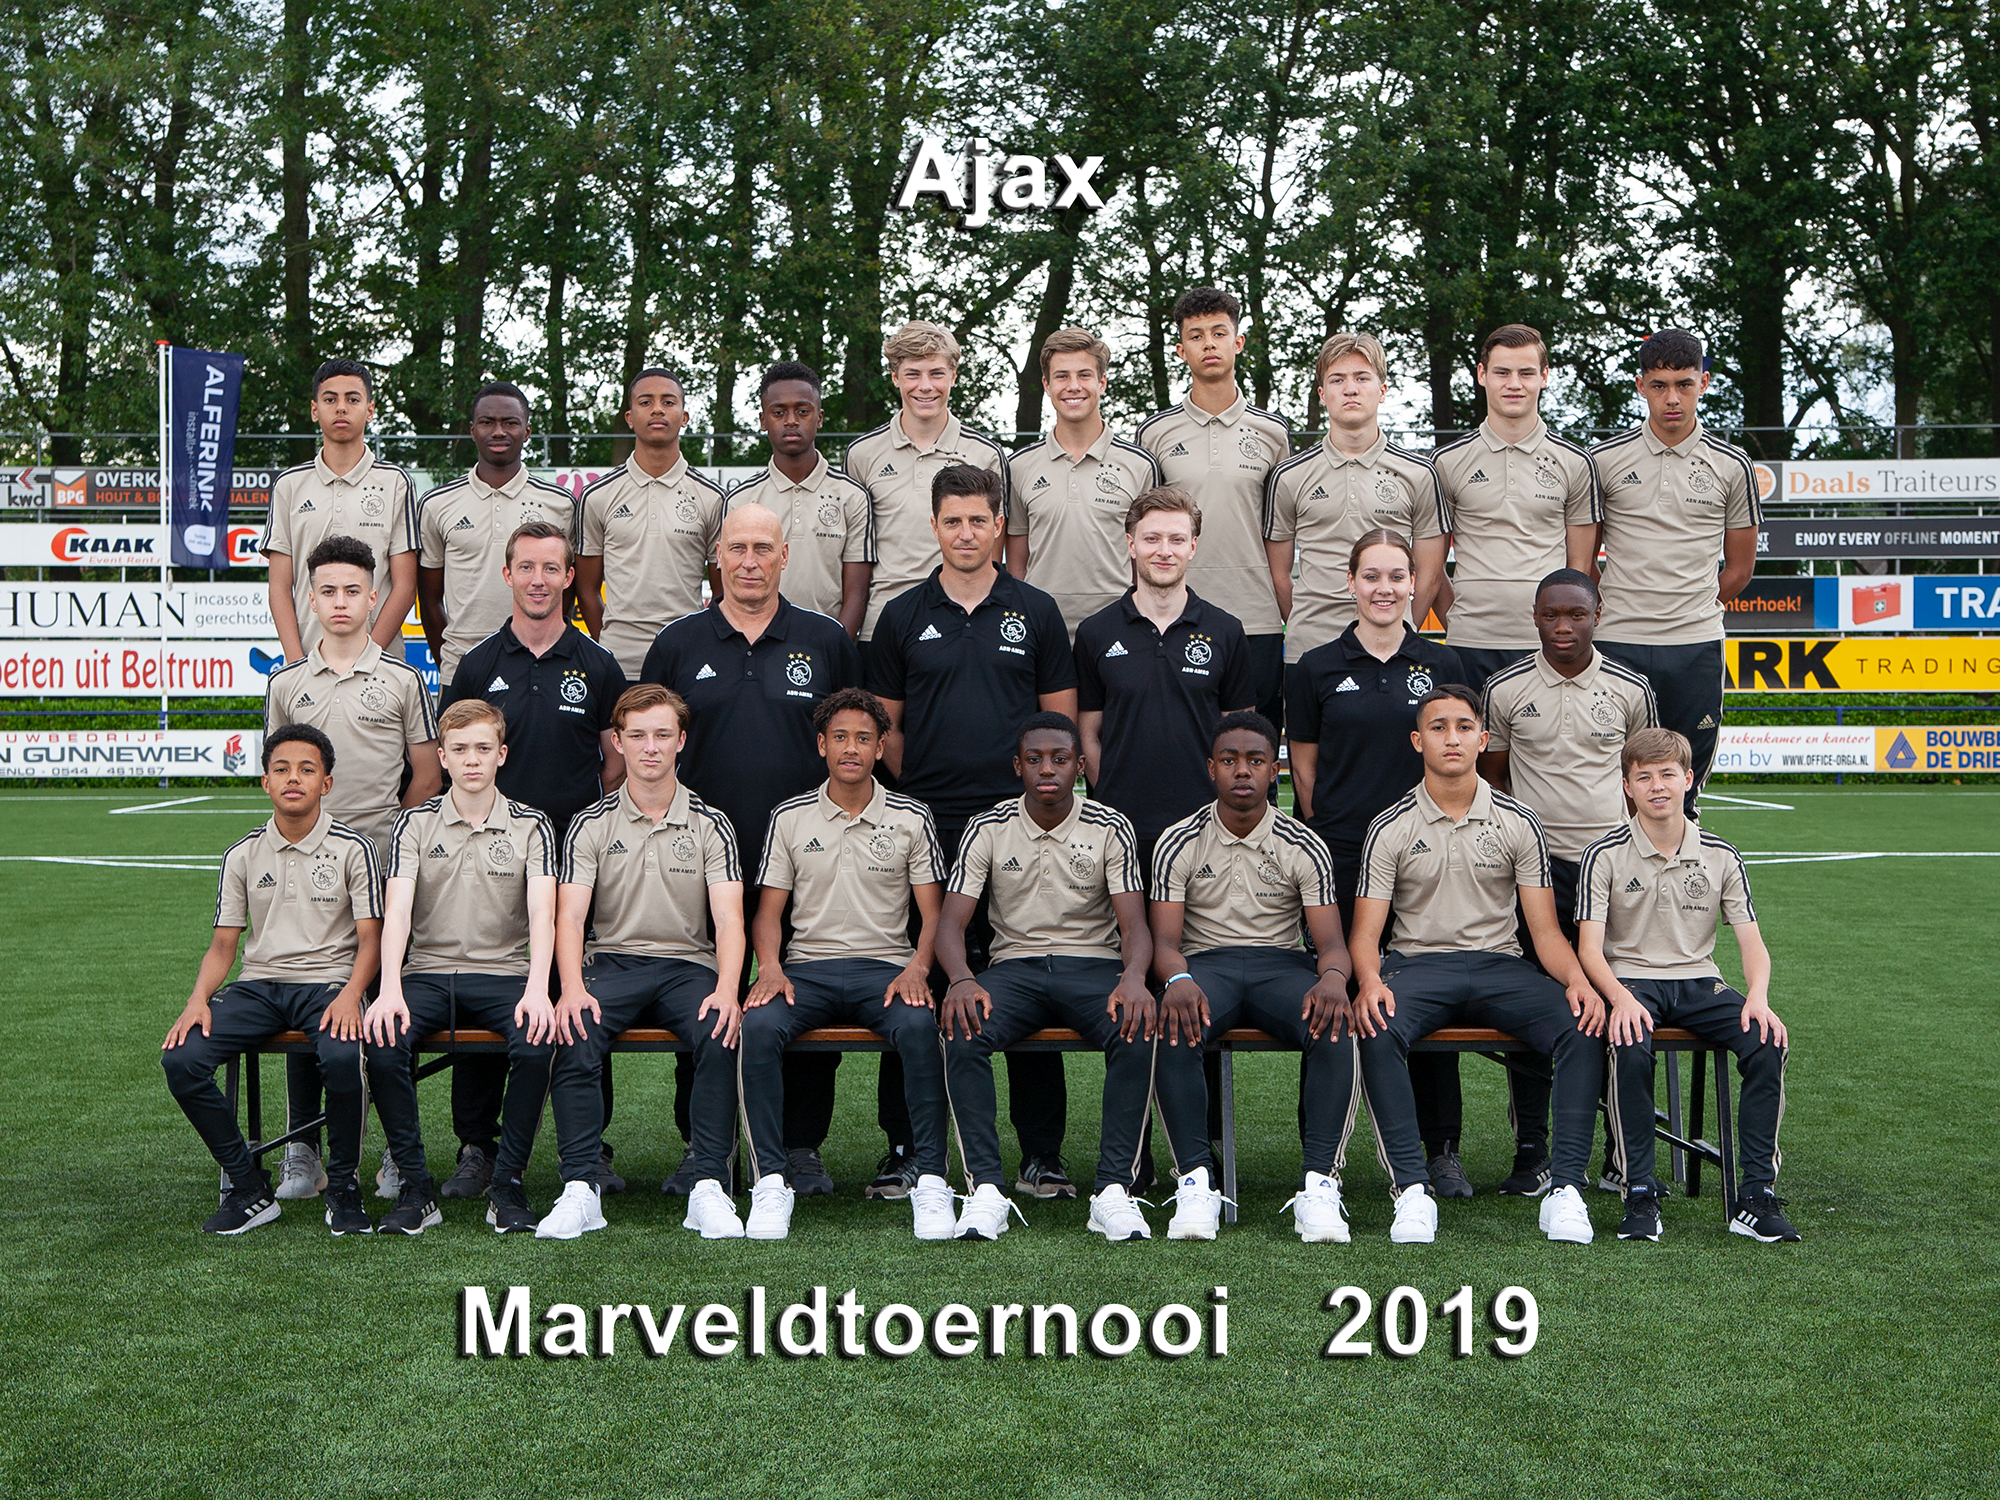 Marveld Tournament 2019 - Team Ajax